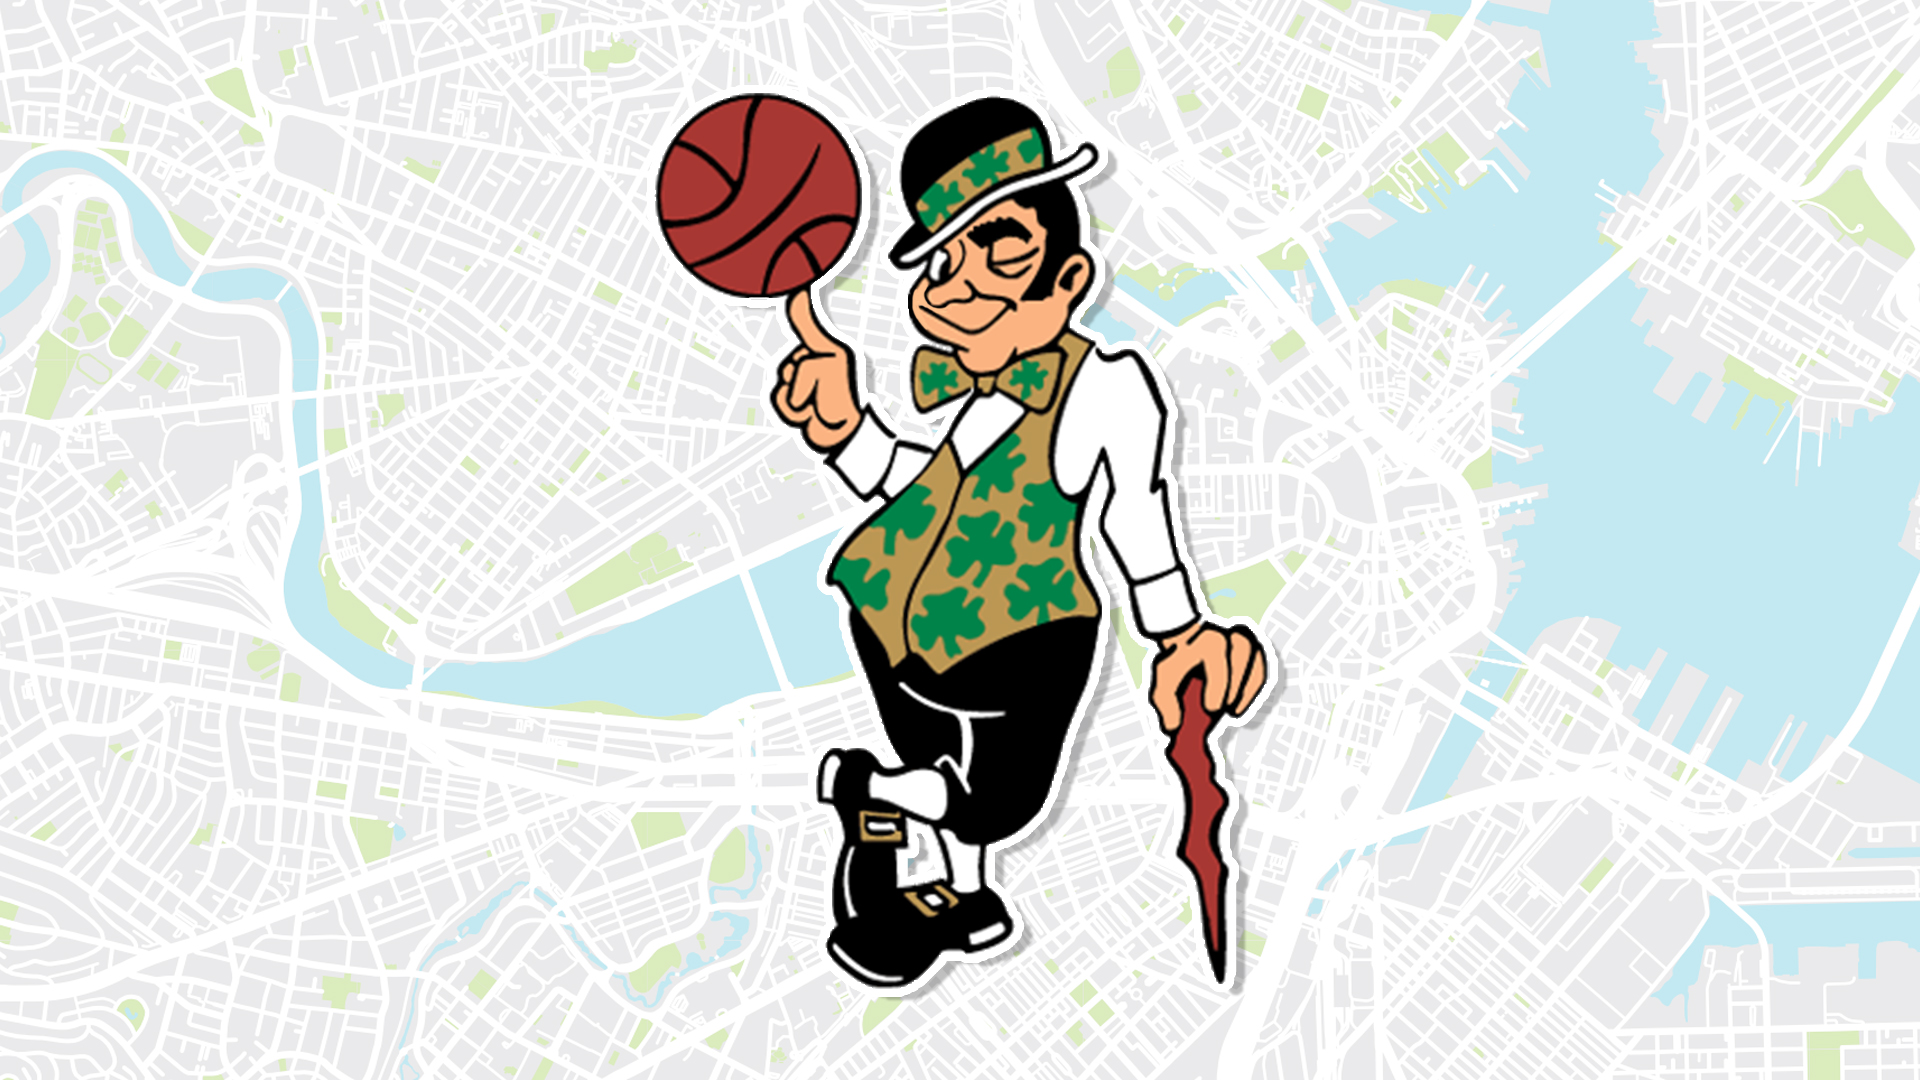 Boston Celtics mascot